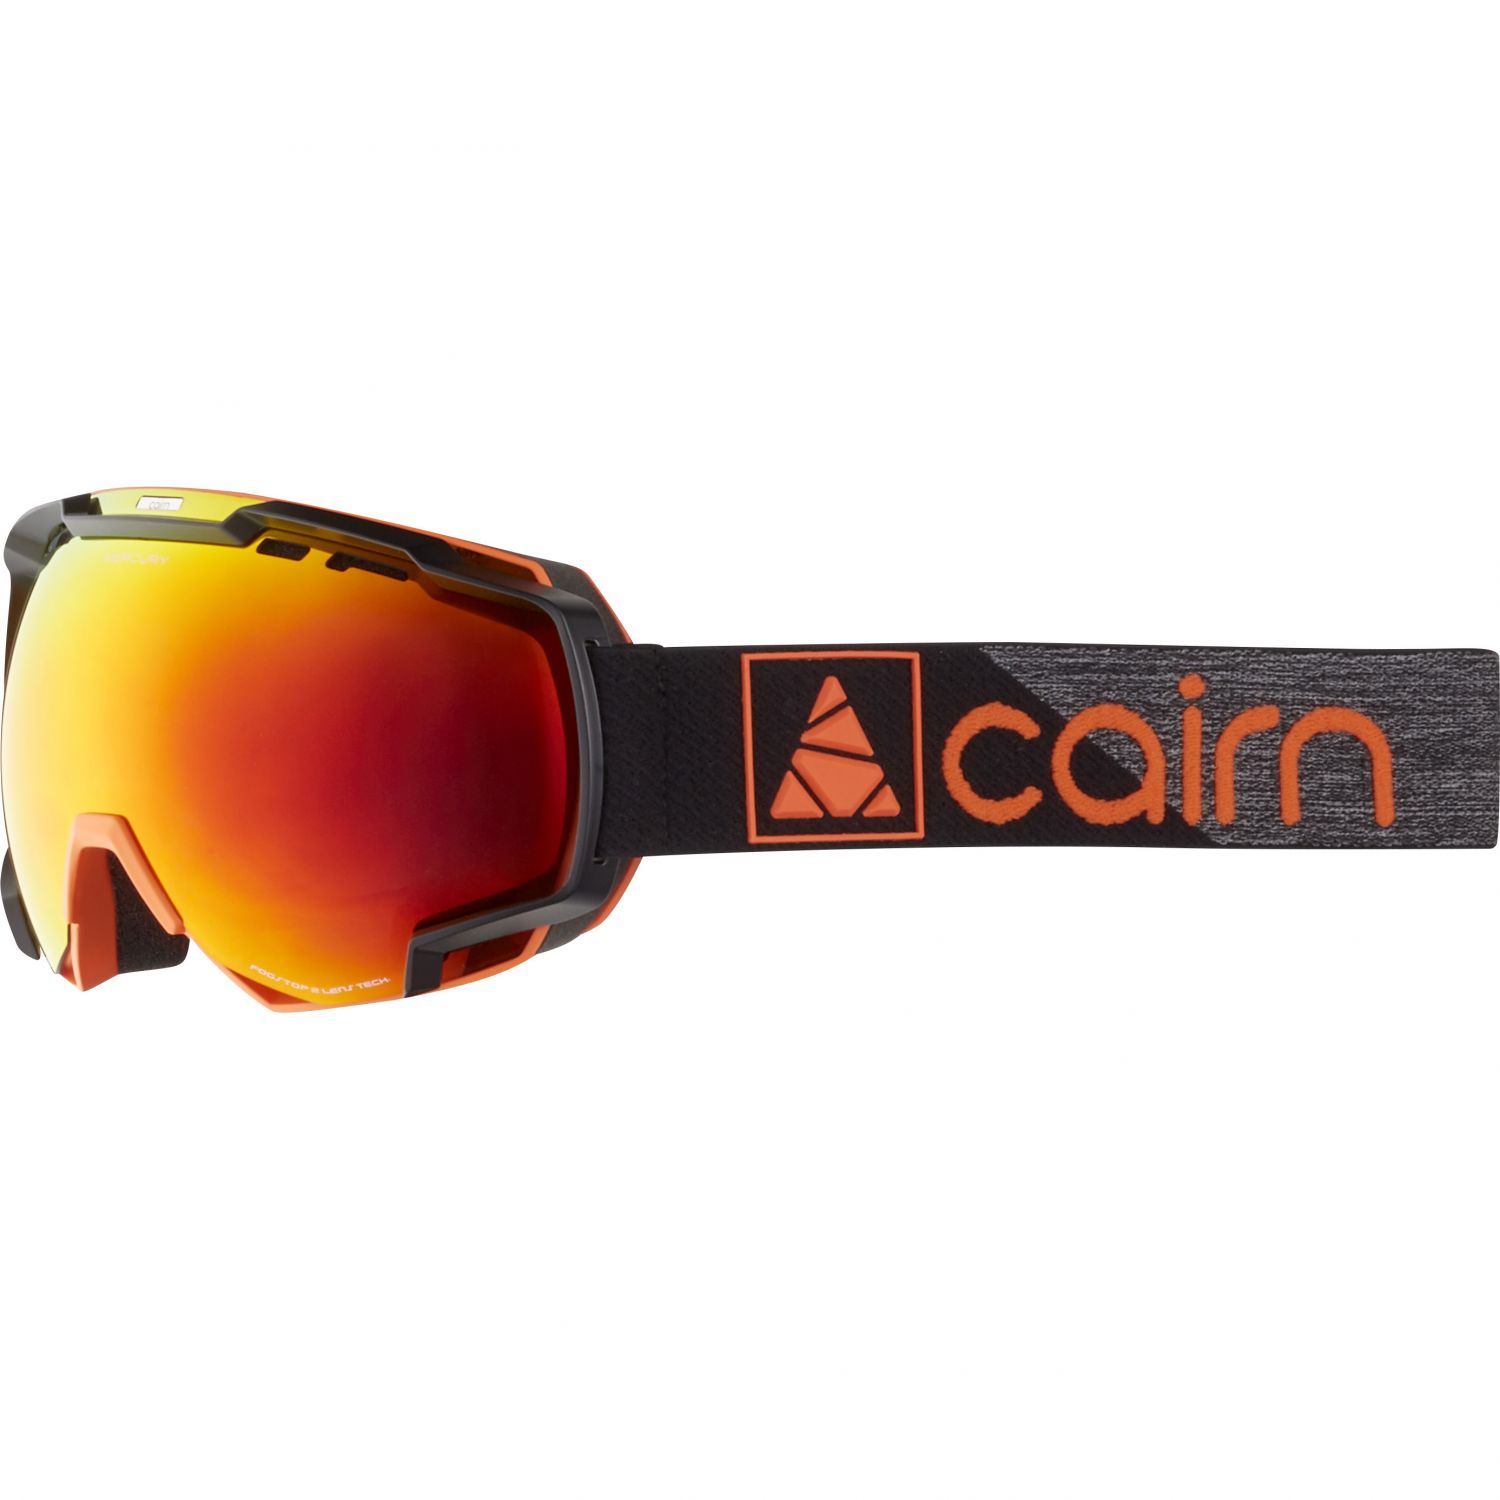 Se Cairn Mercury, skibriller, mat sort hos Skisport.dk